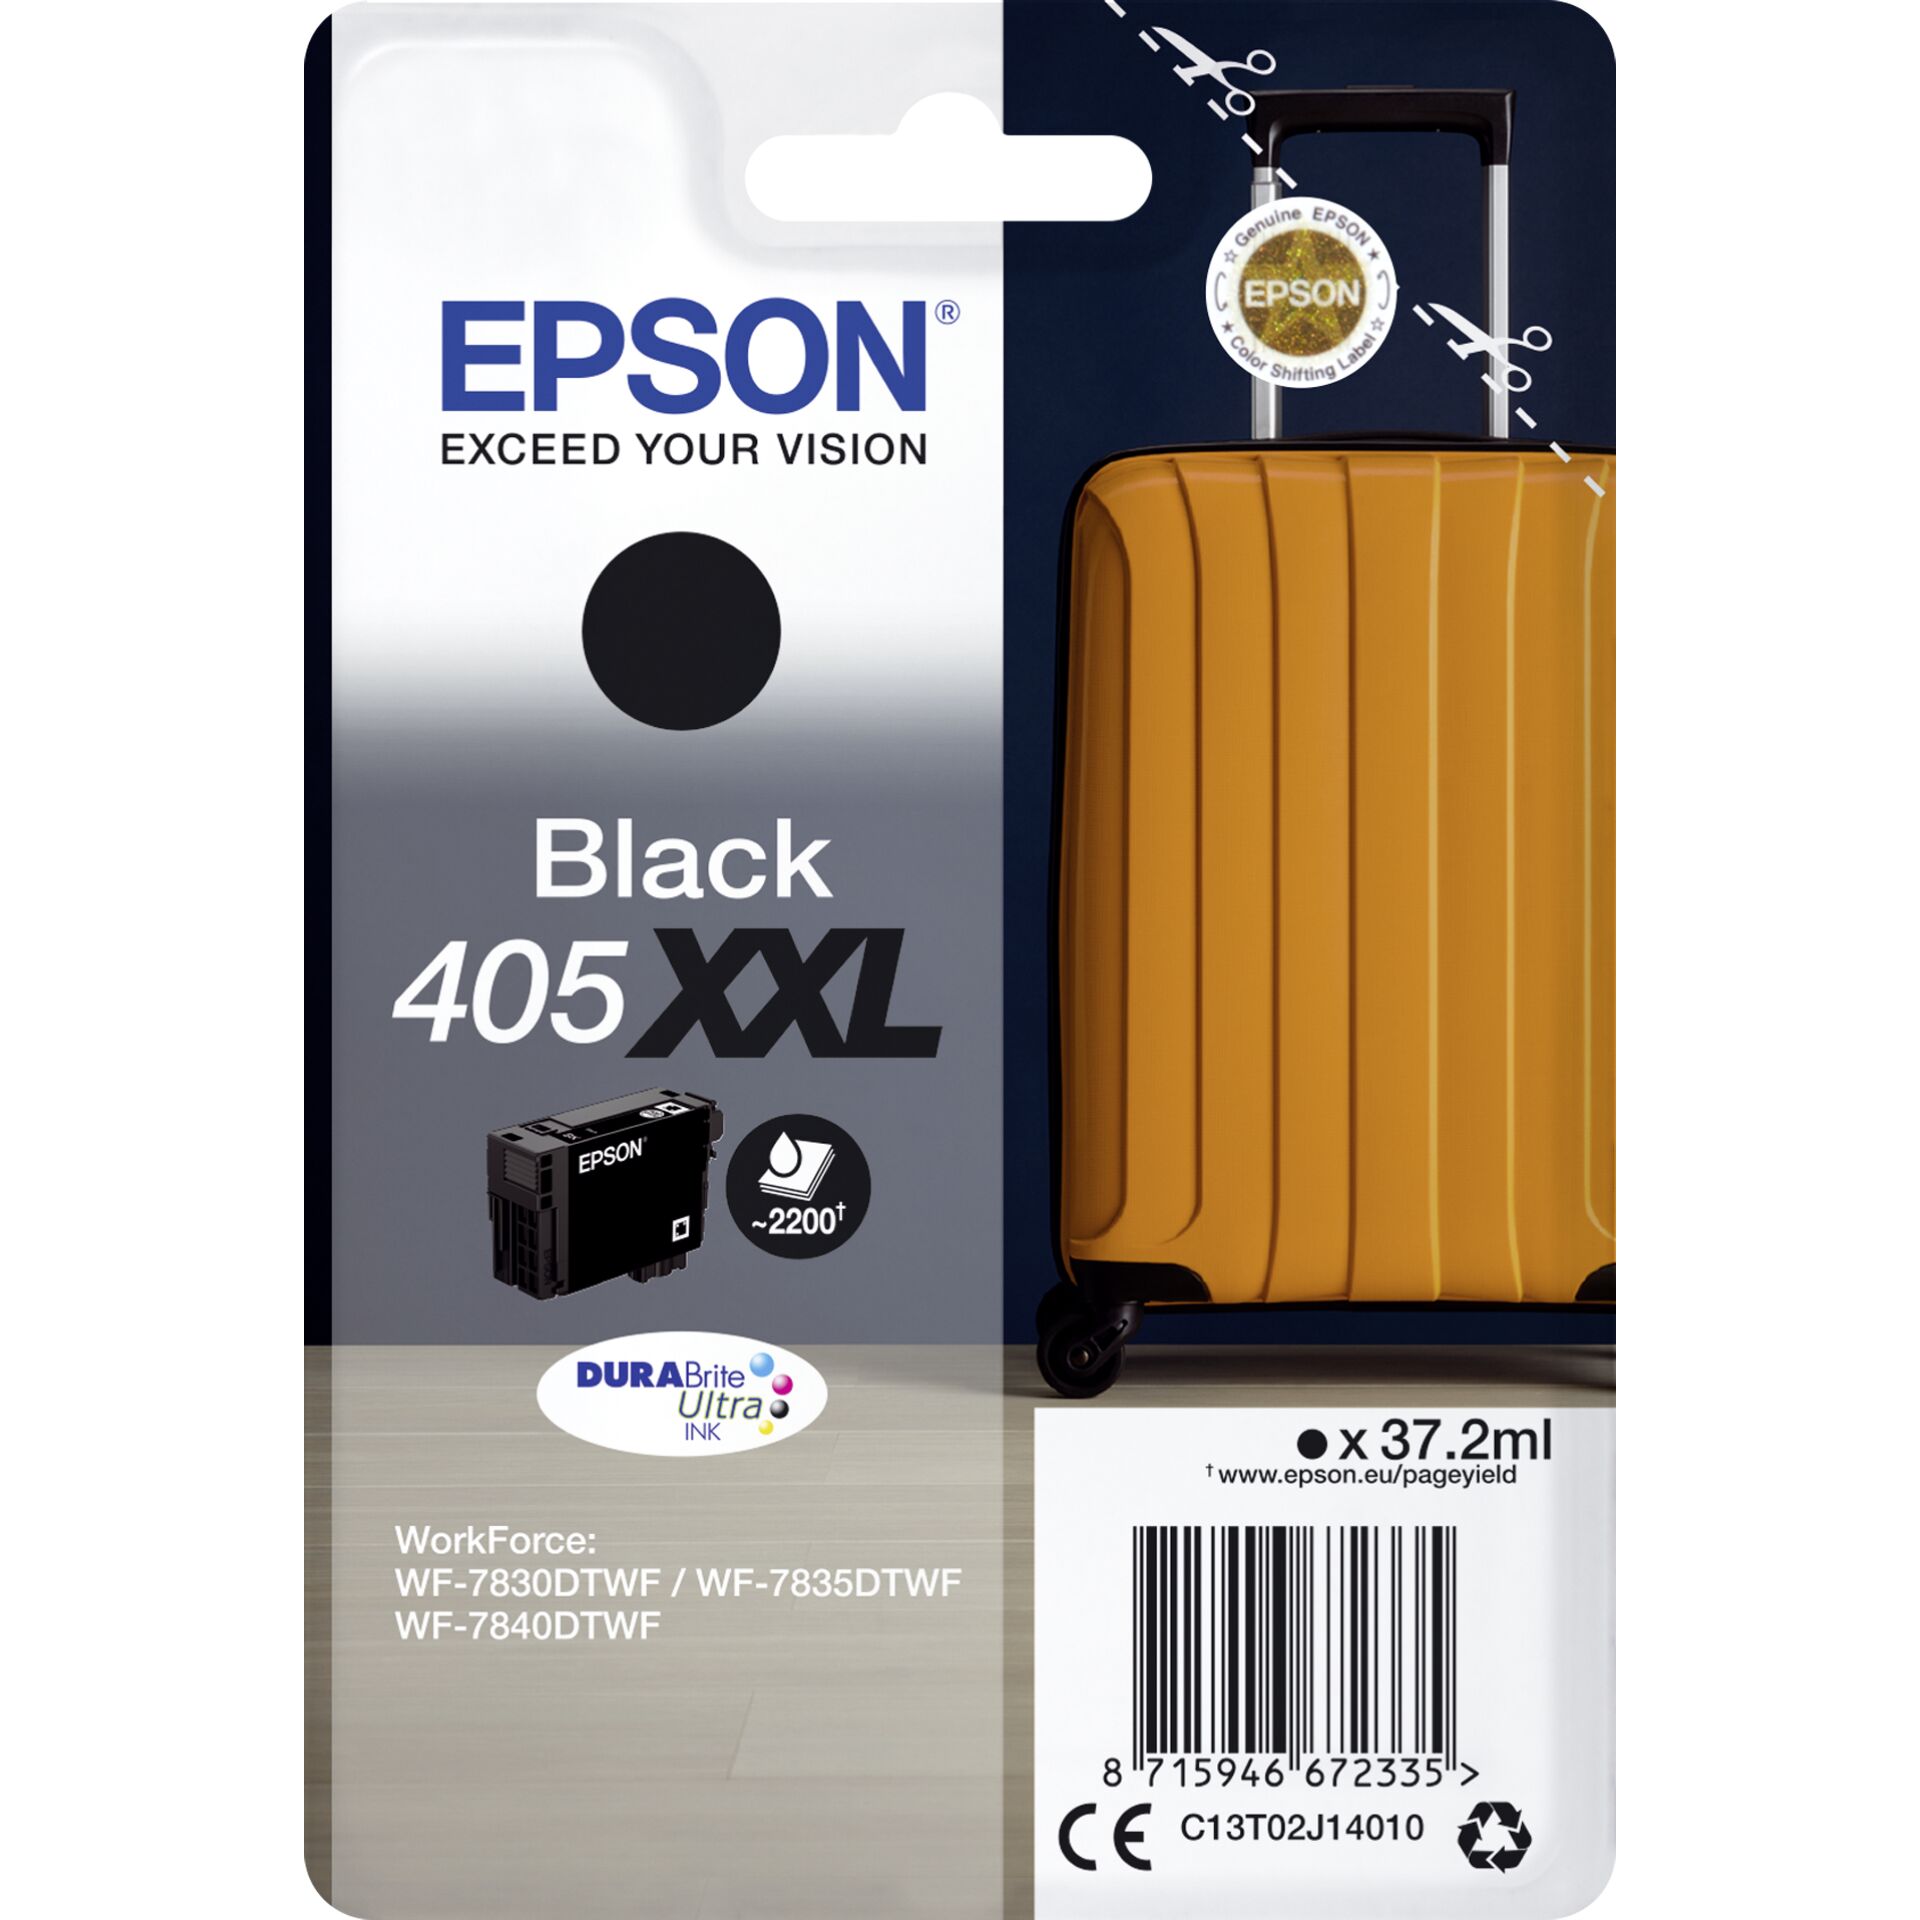 Epson ink cartridge DURABrite Ultra black 405XXL